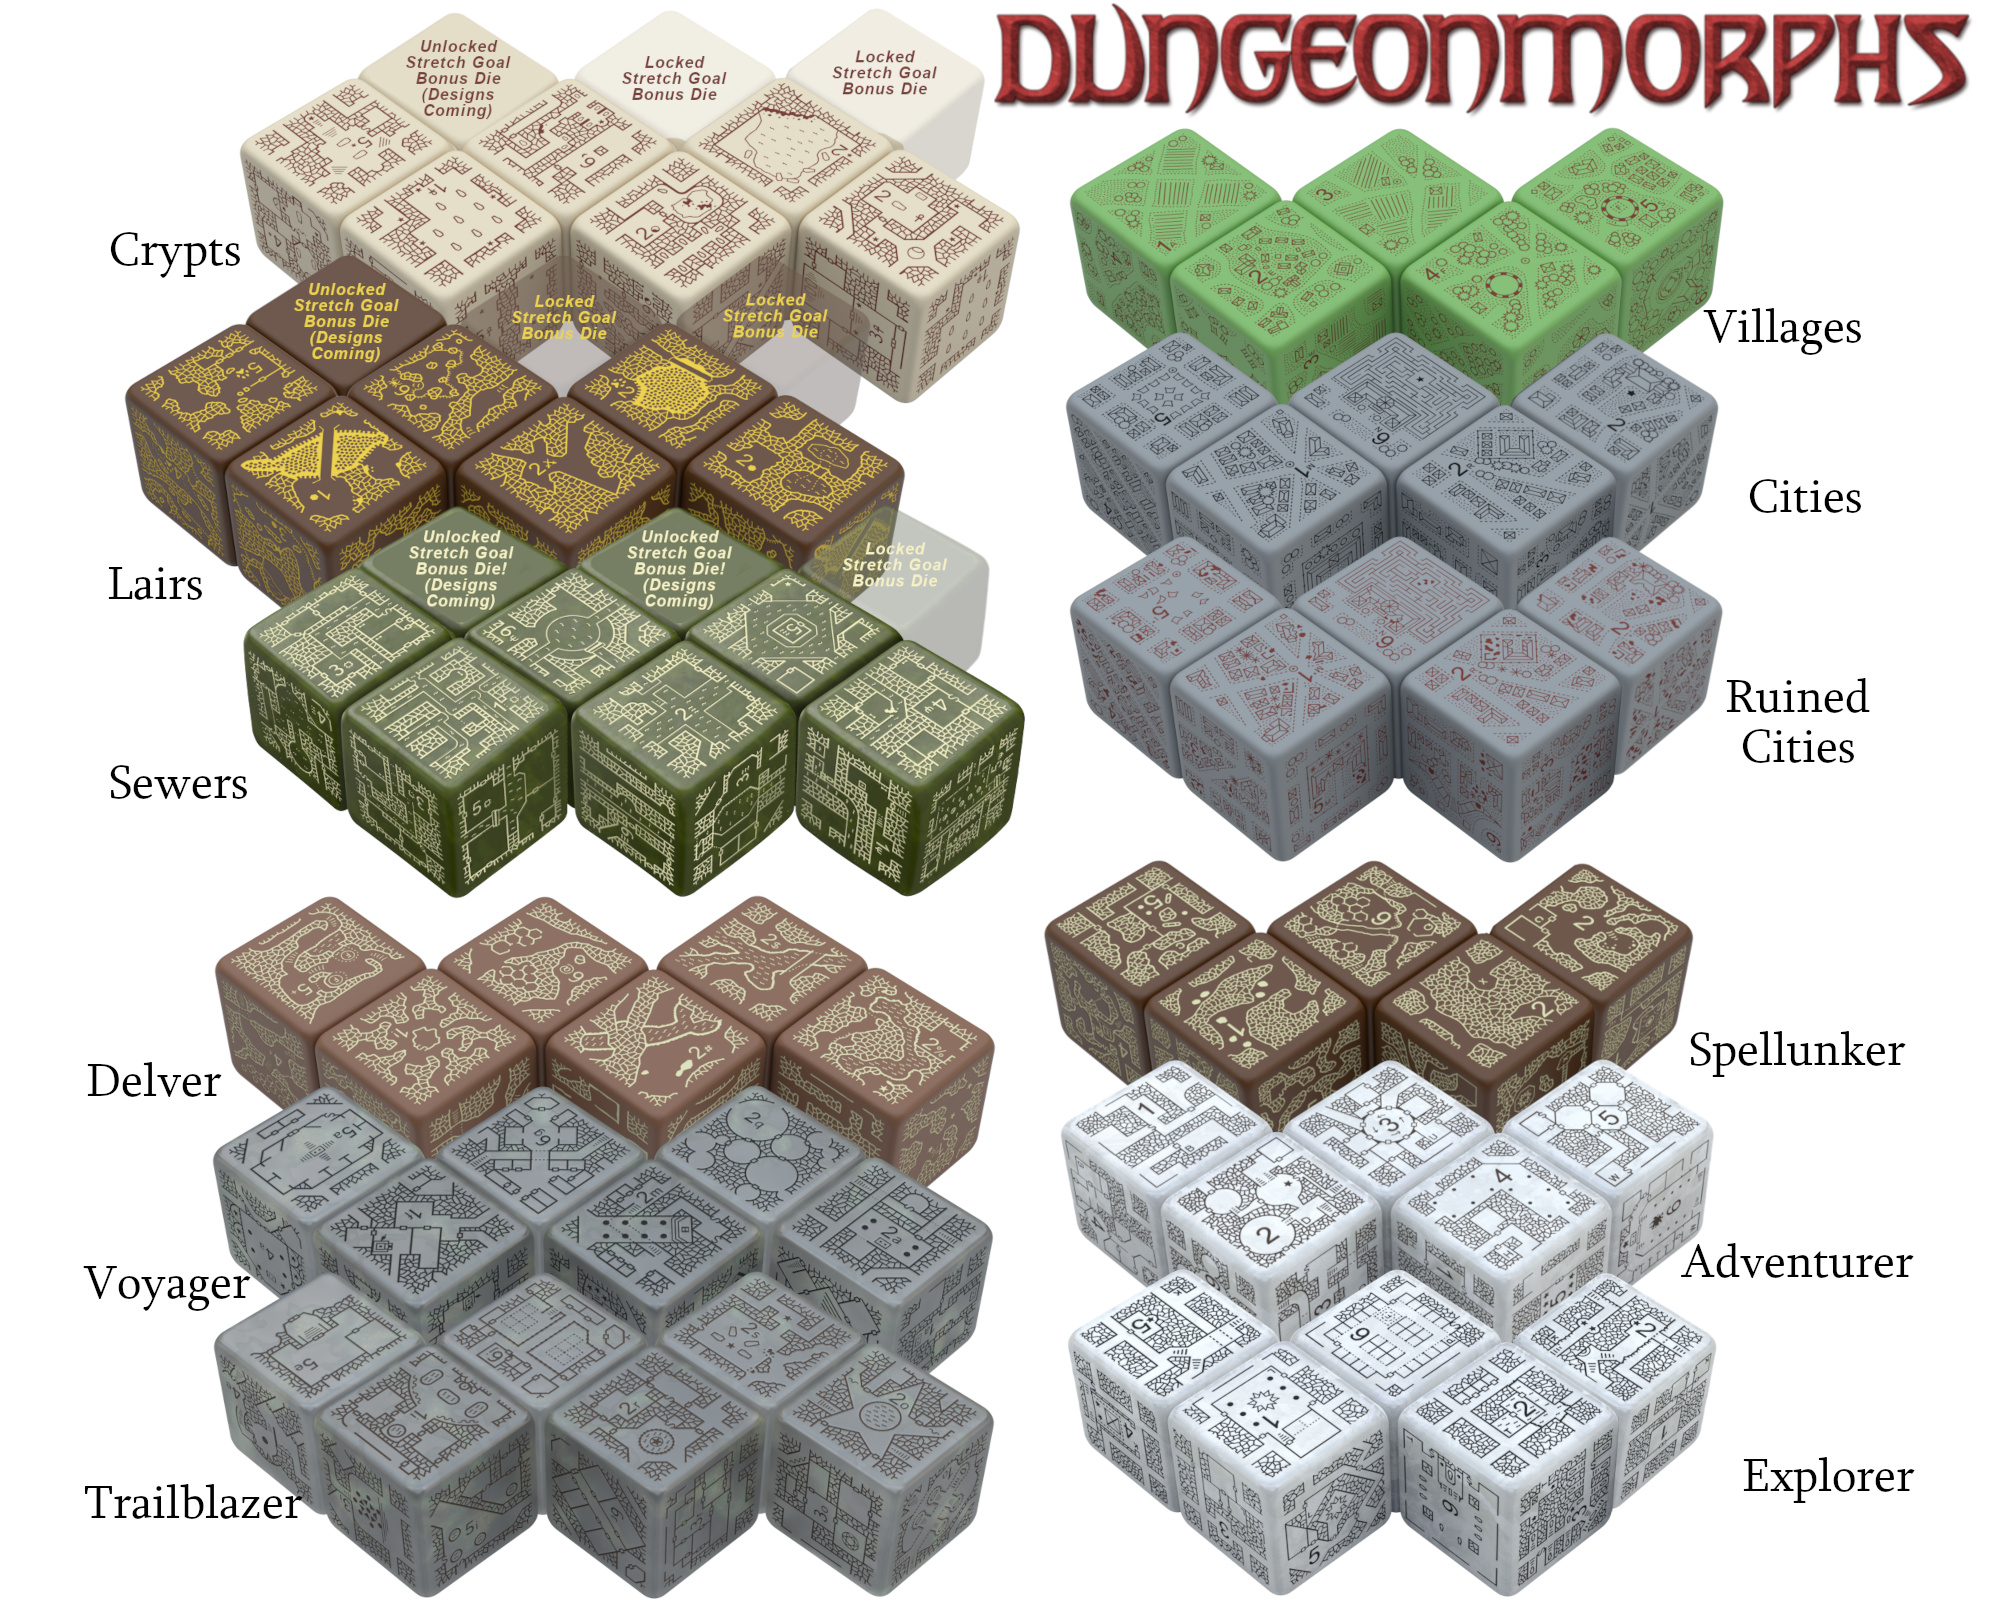 all-dungeonmorphs.jpg